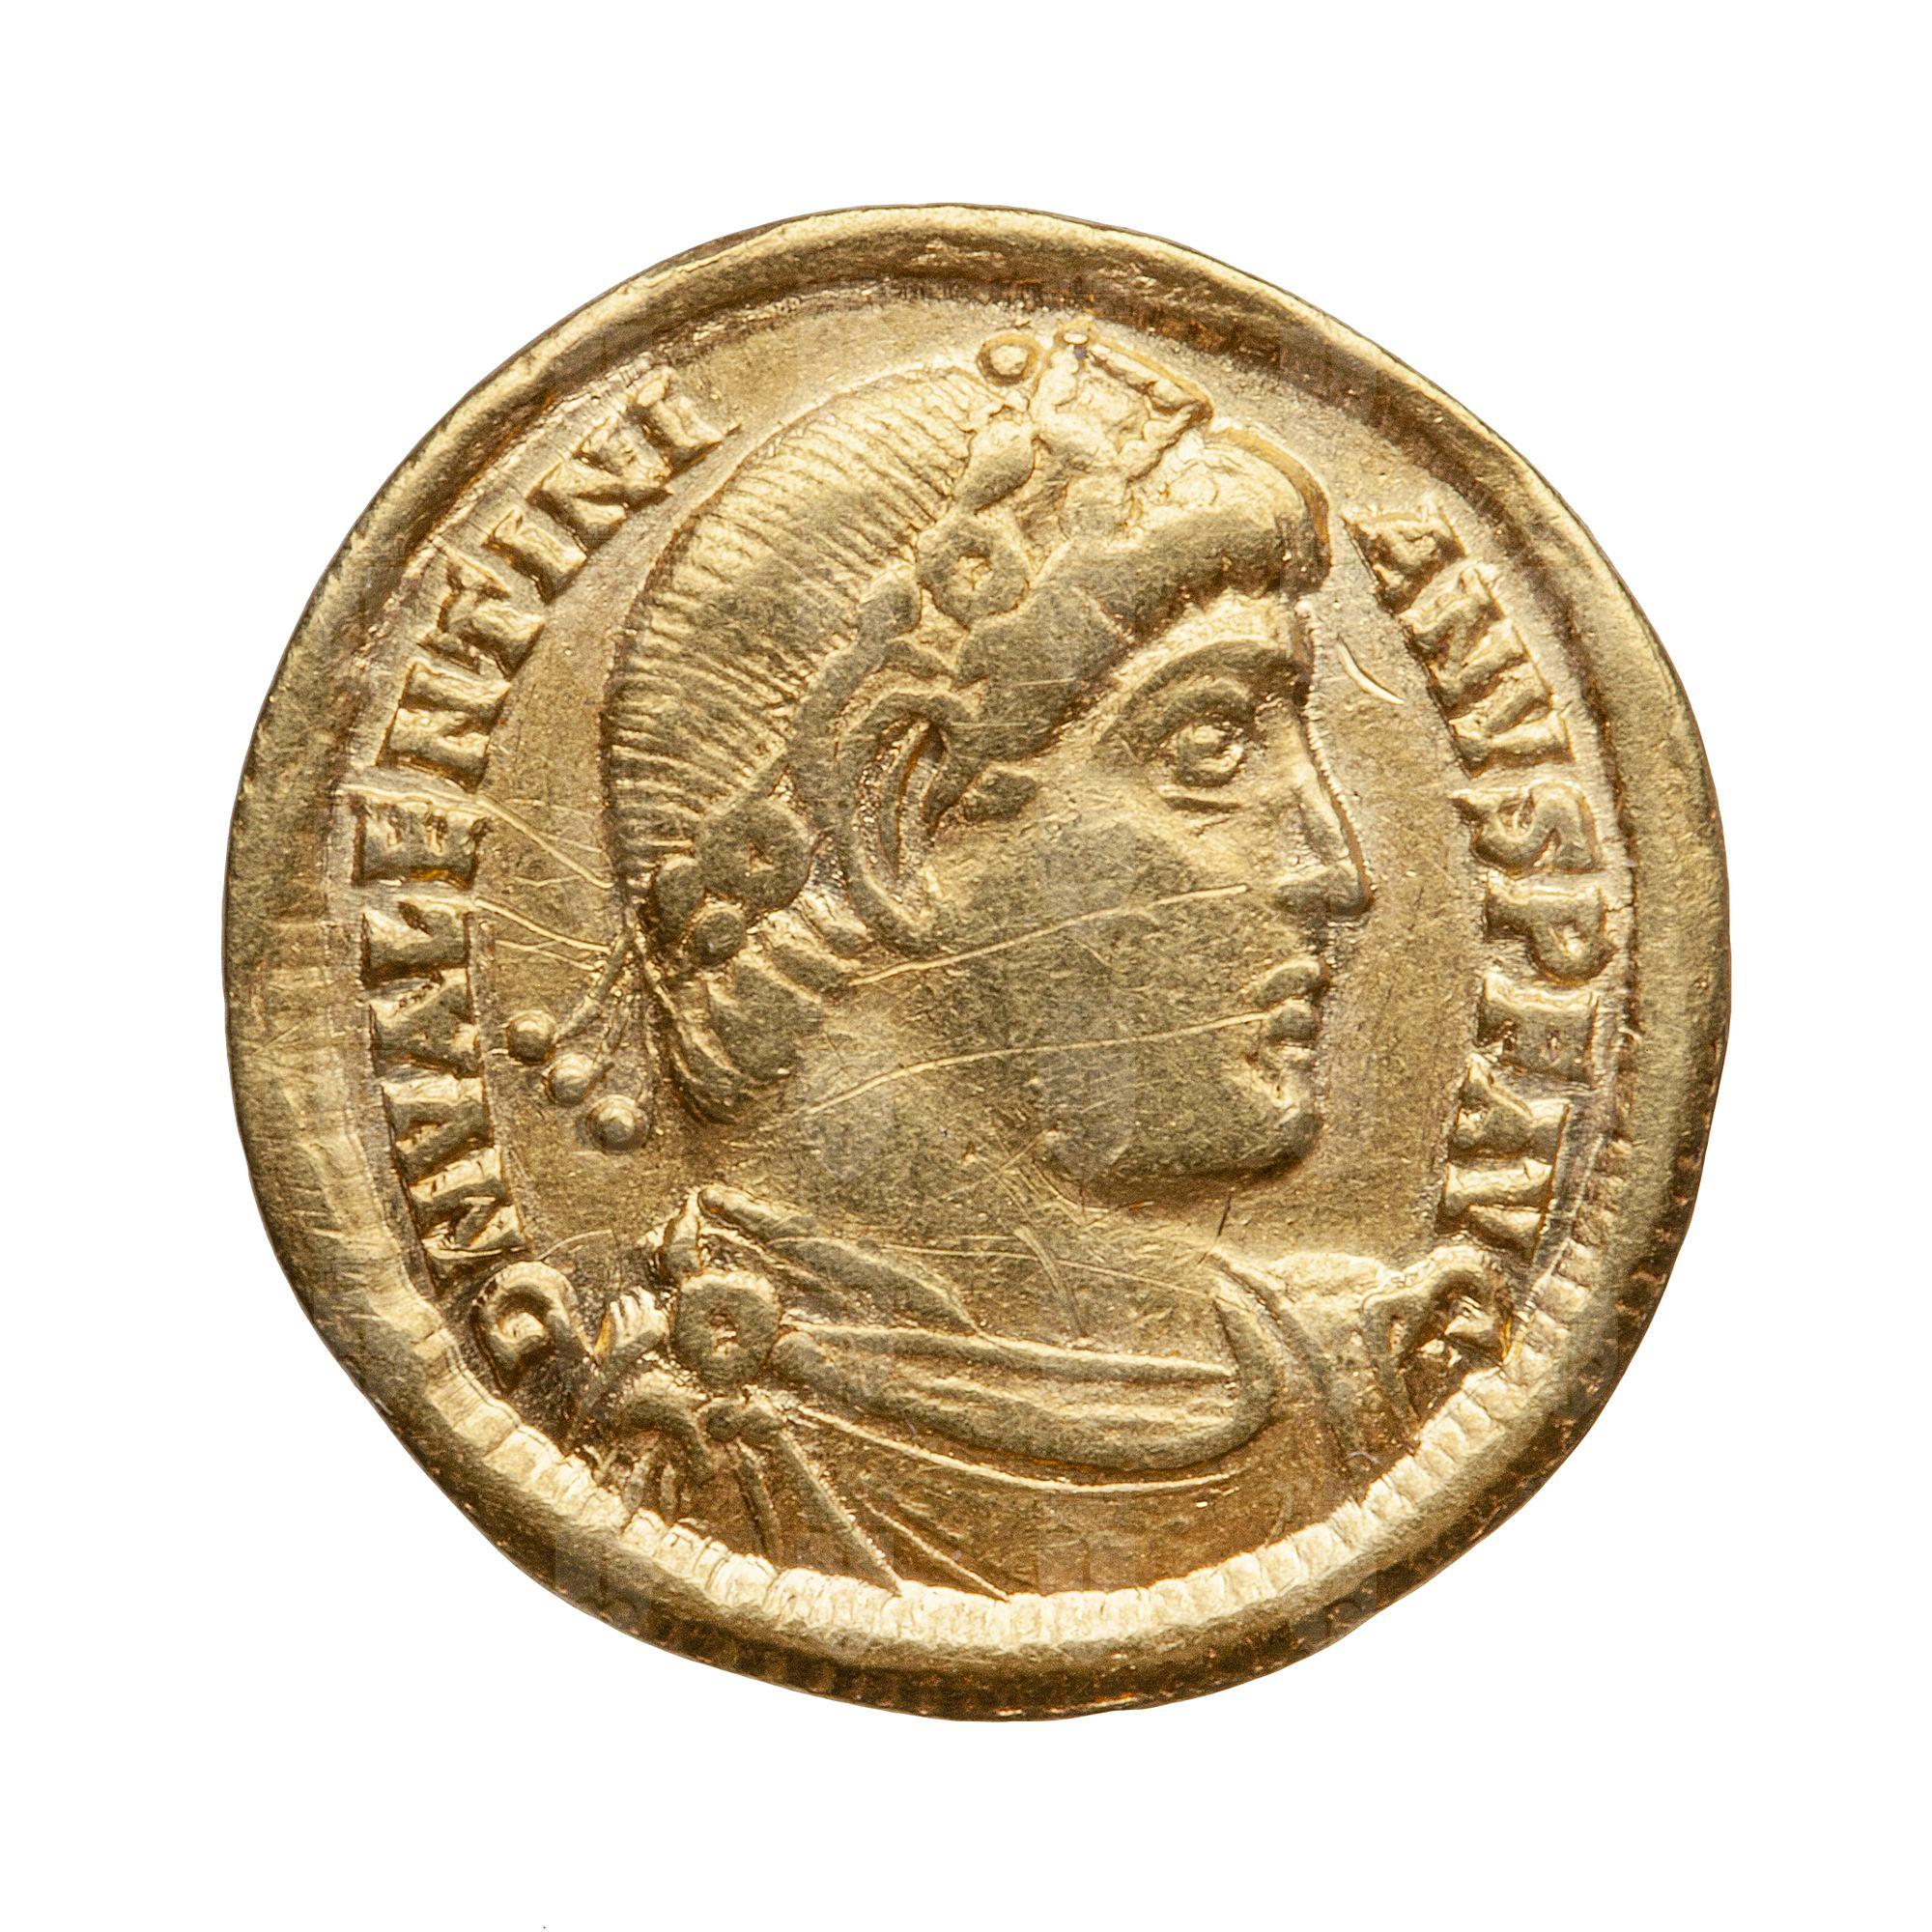 https://catalogomusei.comune.trieste.it/samira/resource/image/reperti-archeologici/Roma 2880 D Valentiniano.jpg?token=651506e2d2fc5